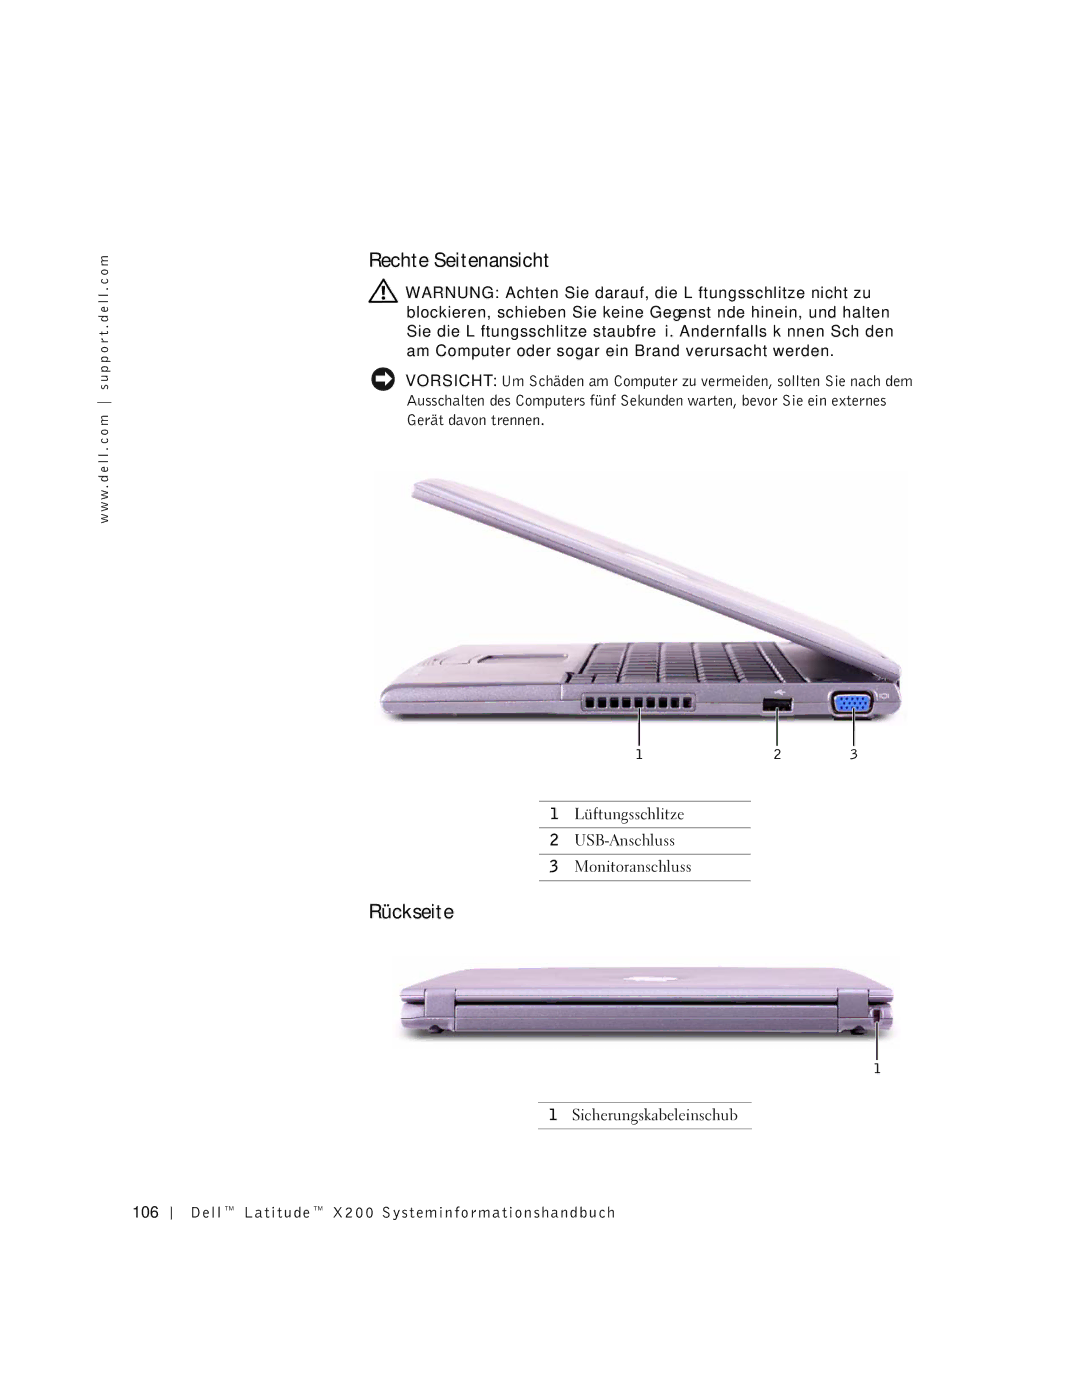 LeapFrog PP03S manual Rechte Seitenansicht, Rückseite, Dell Latitude X200 Systeminformationshandbuch 